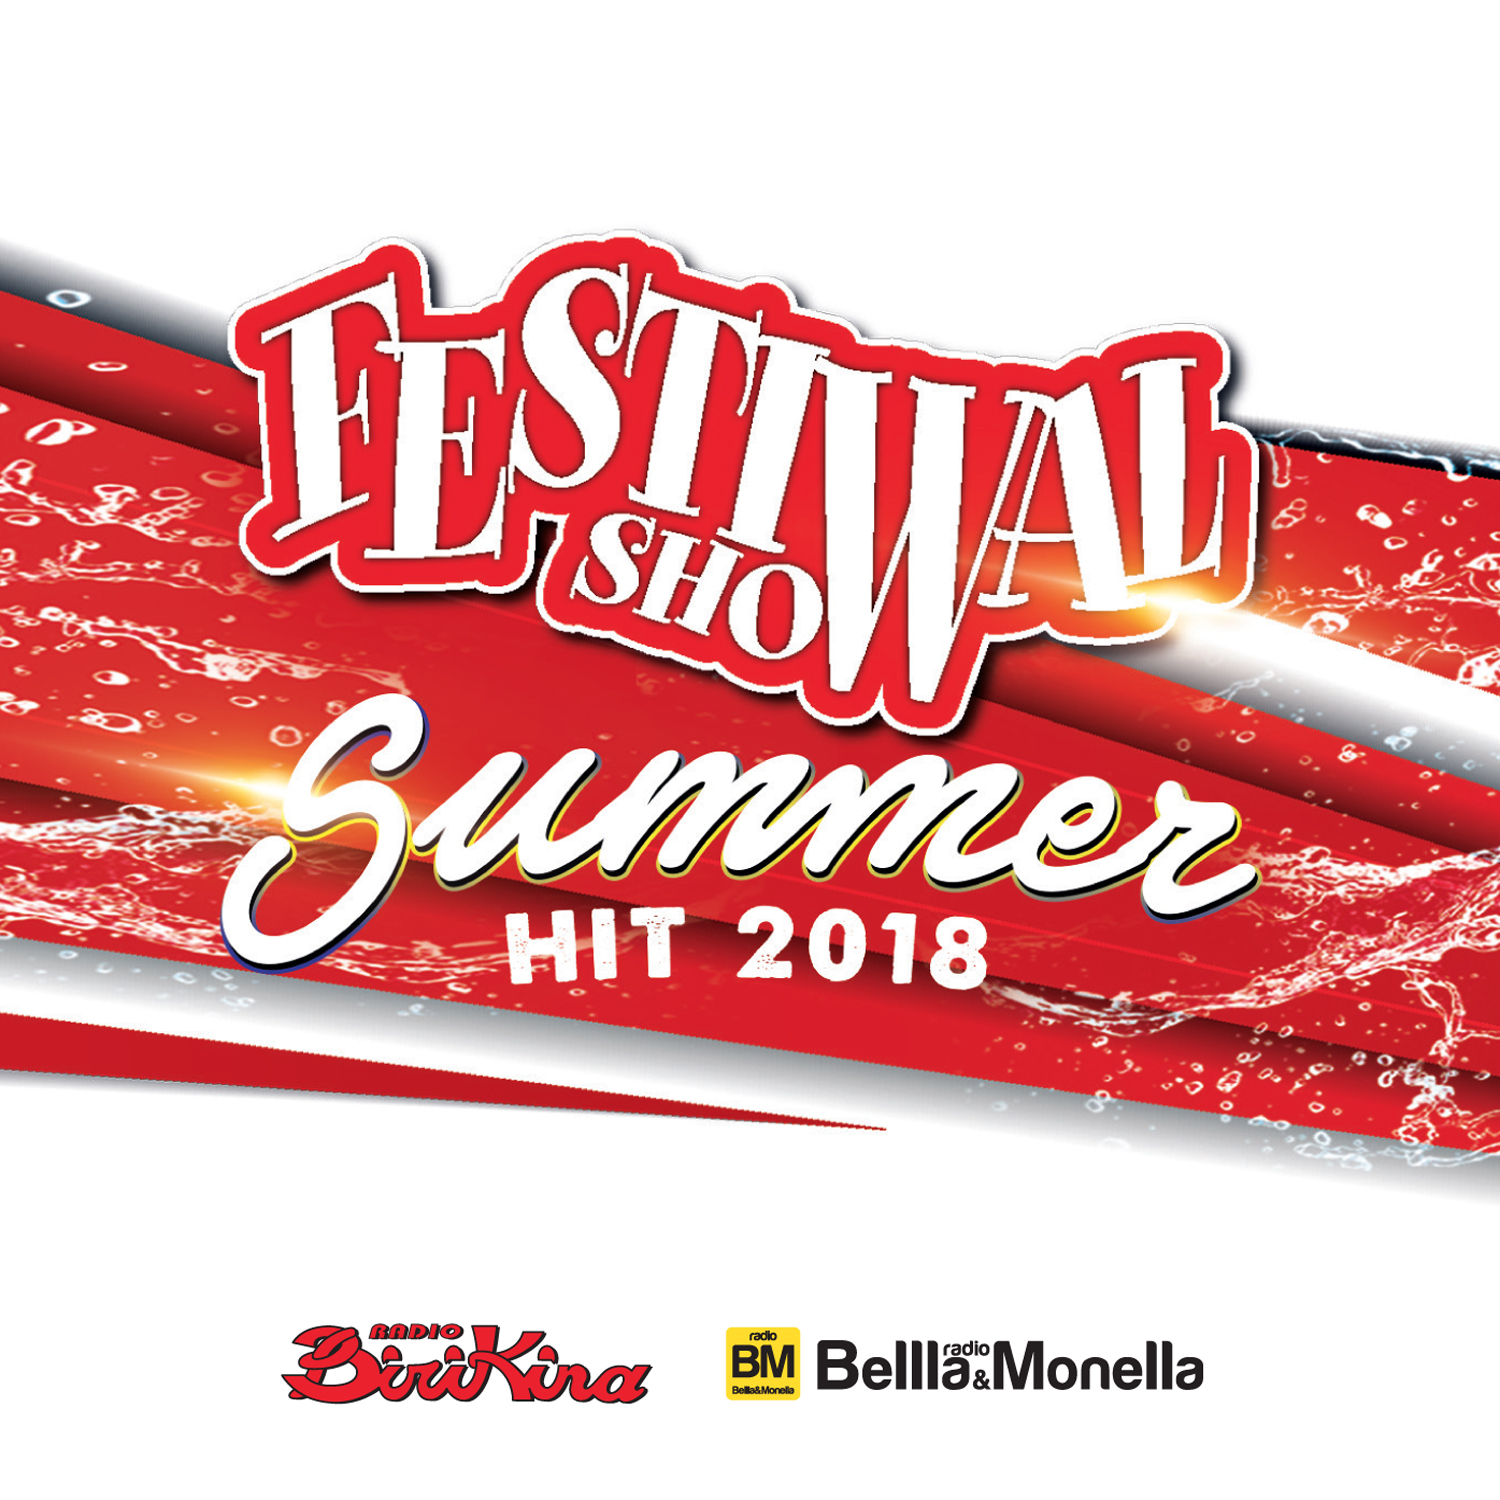 FESTIVAL SHOW SUMMER HIT 2018